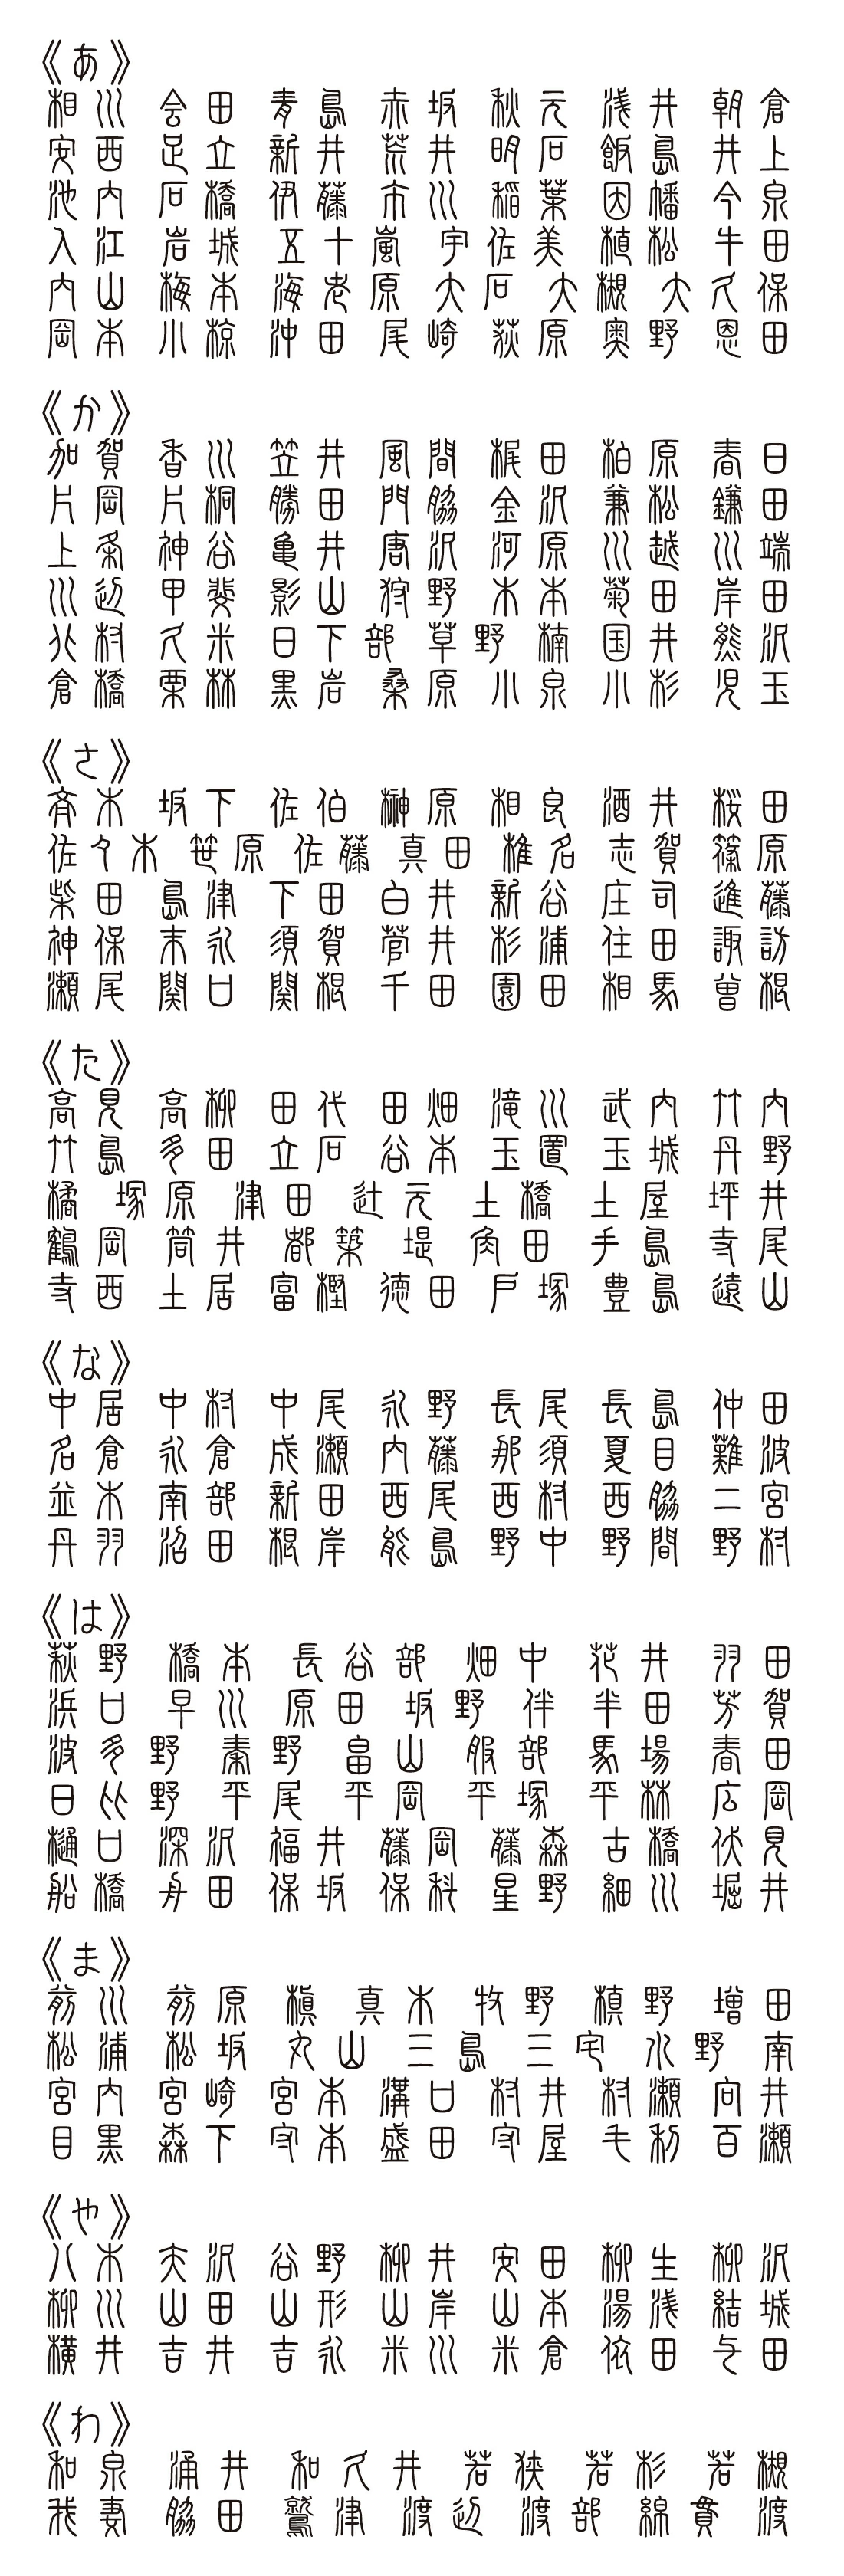 表札 書体 おすすめ 人気 表和3 漢字